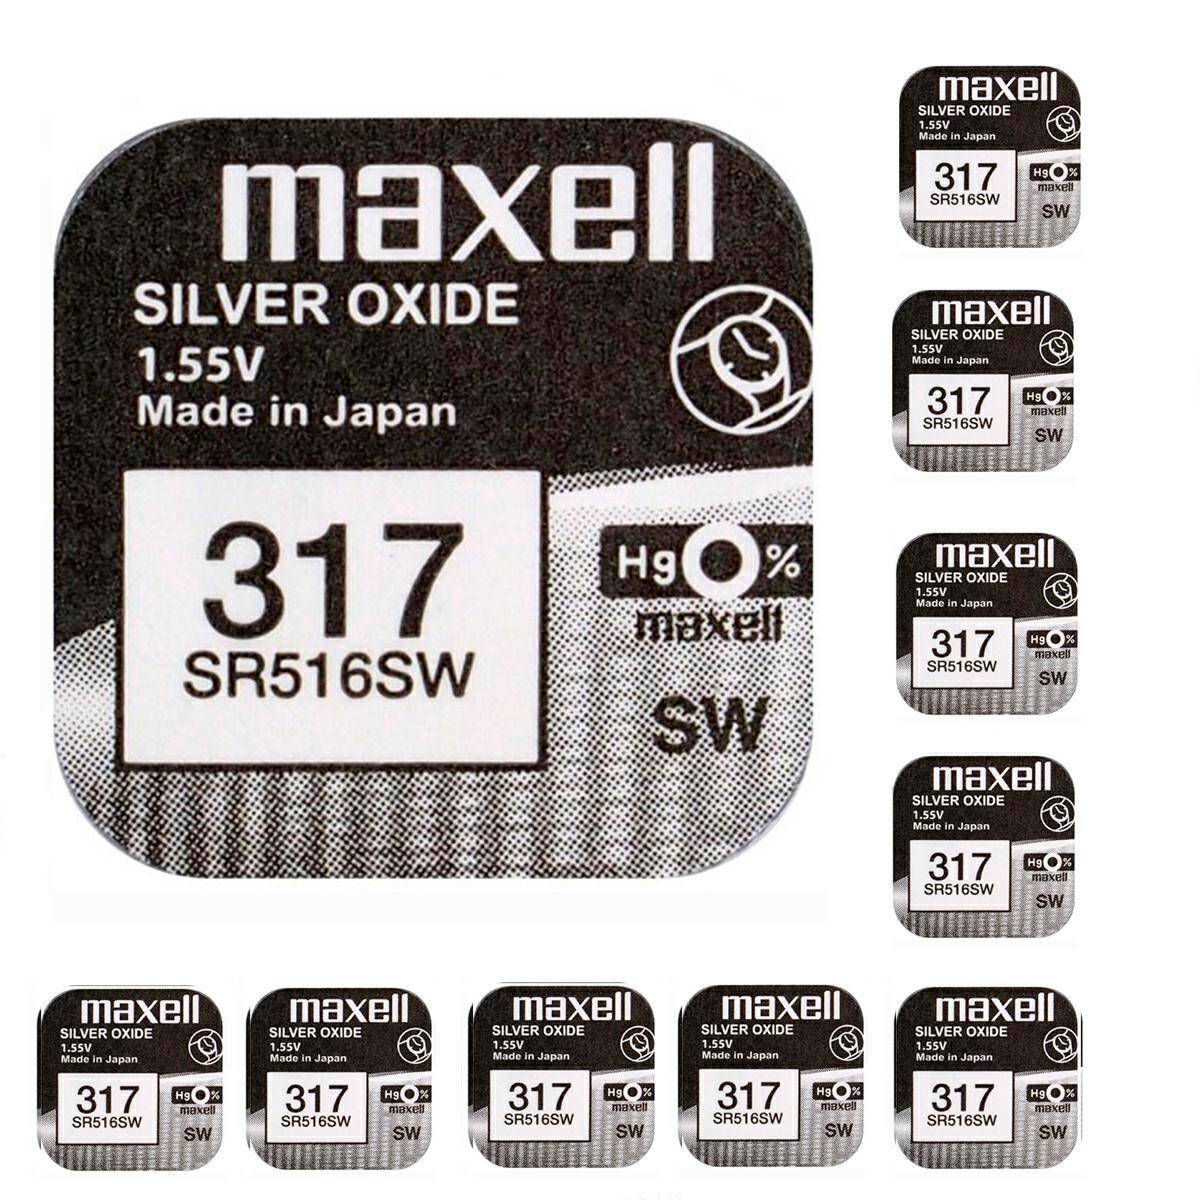 Batterie Maxell 317 SR516SW 1,55V 10 stck